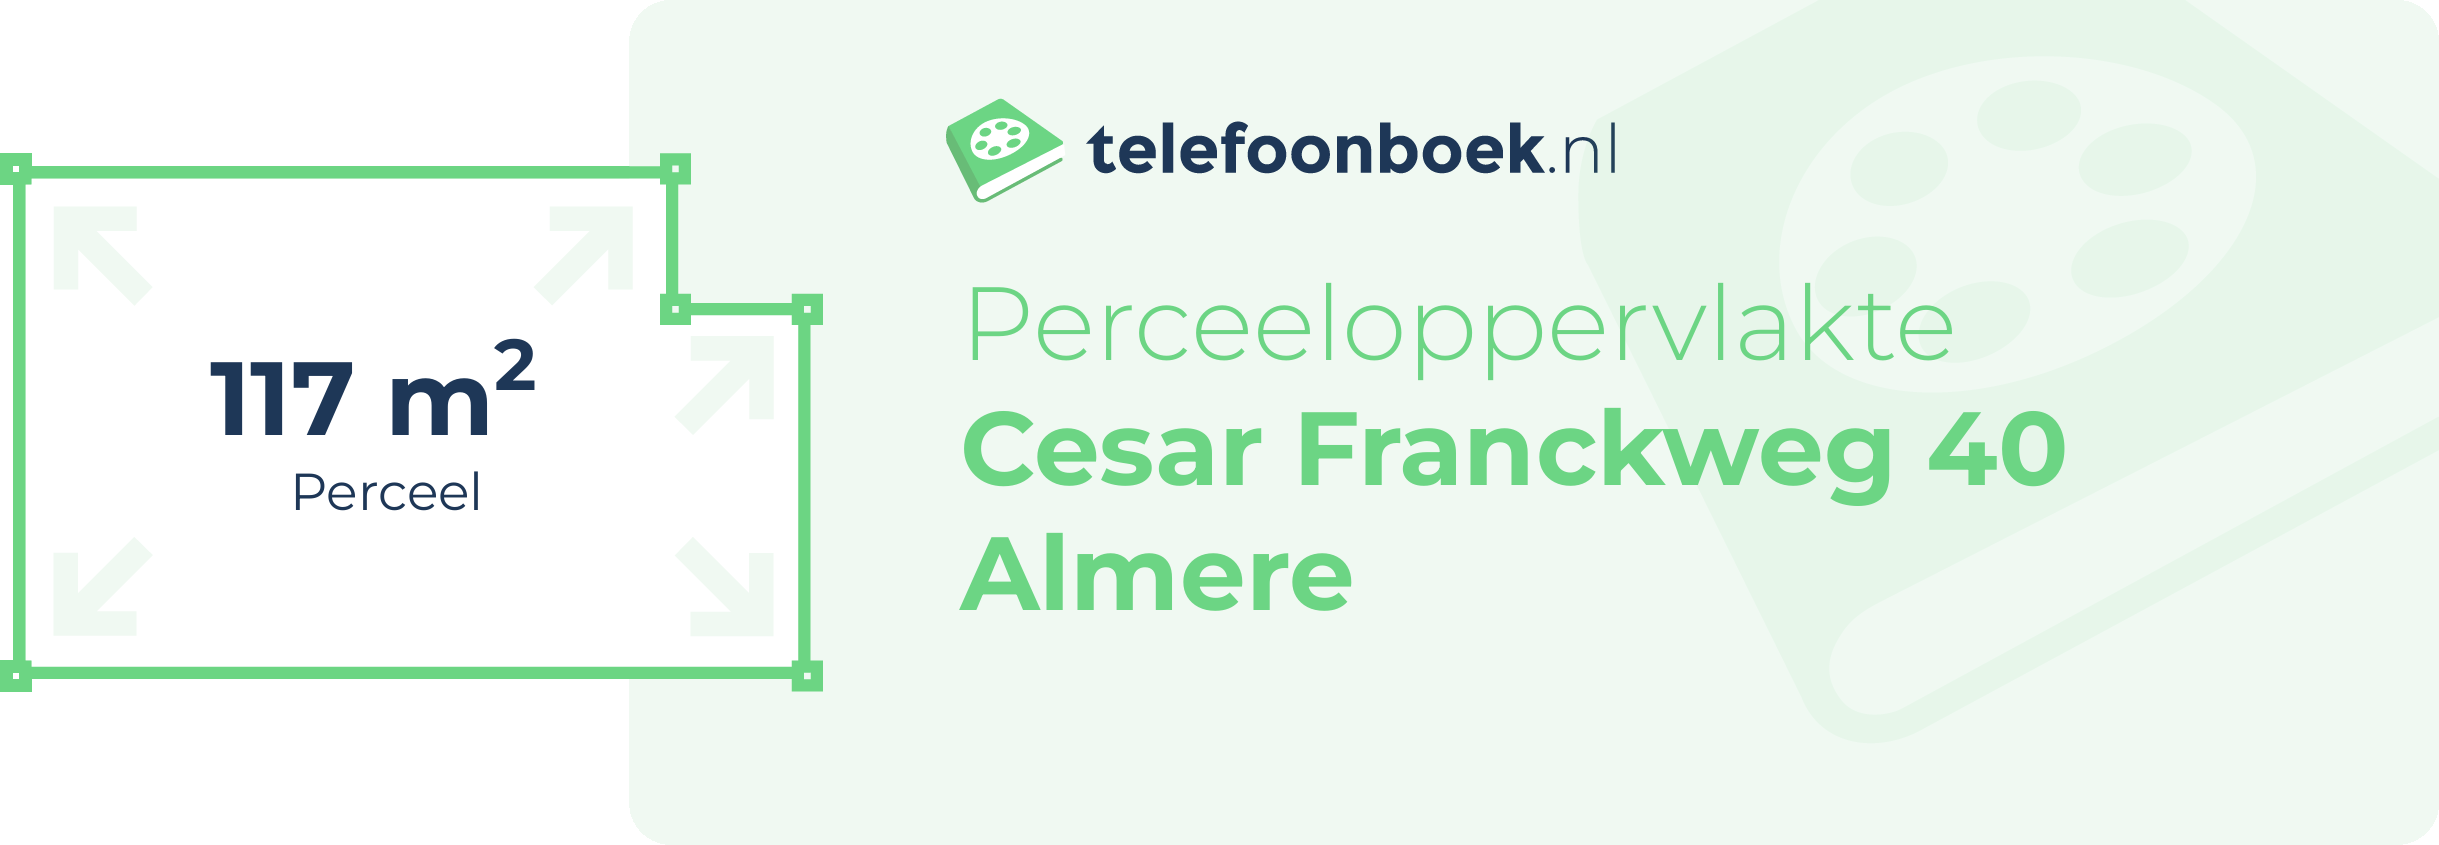 Perceeloppervlakte Cesar Franckweg 40 Almere